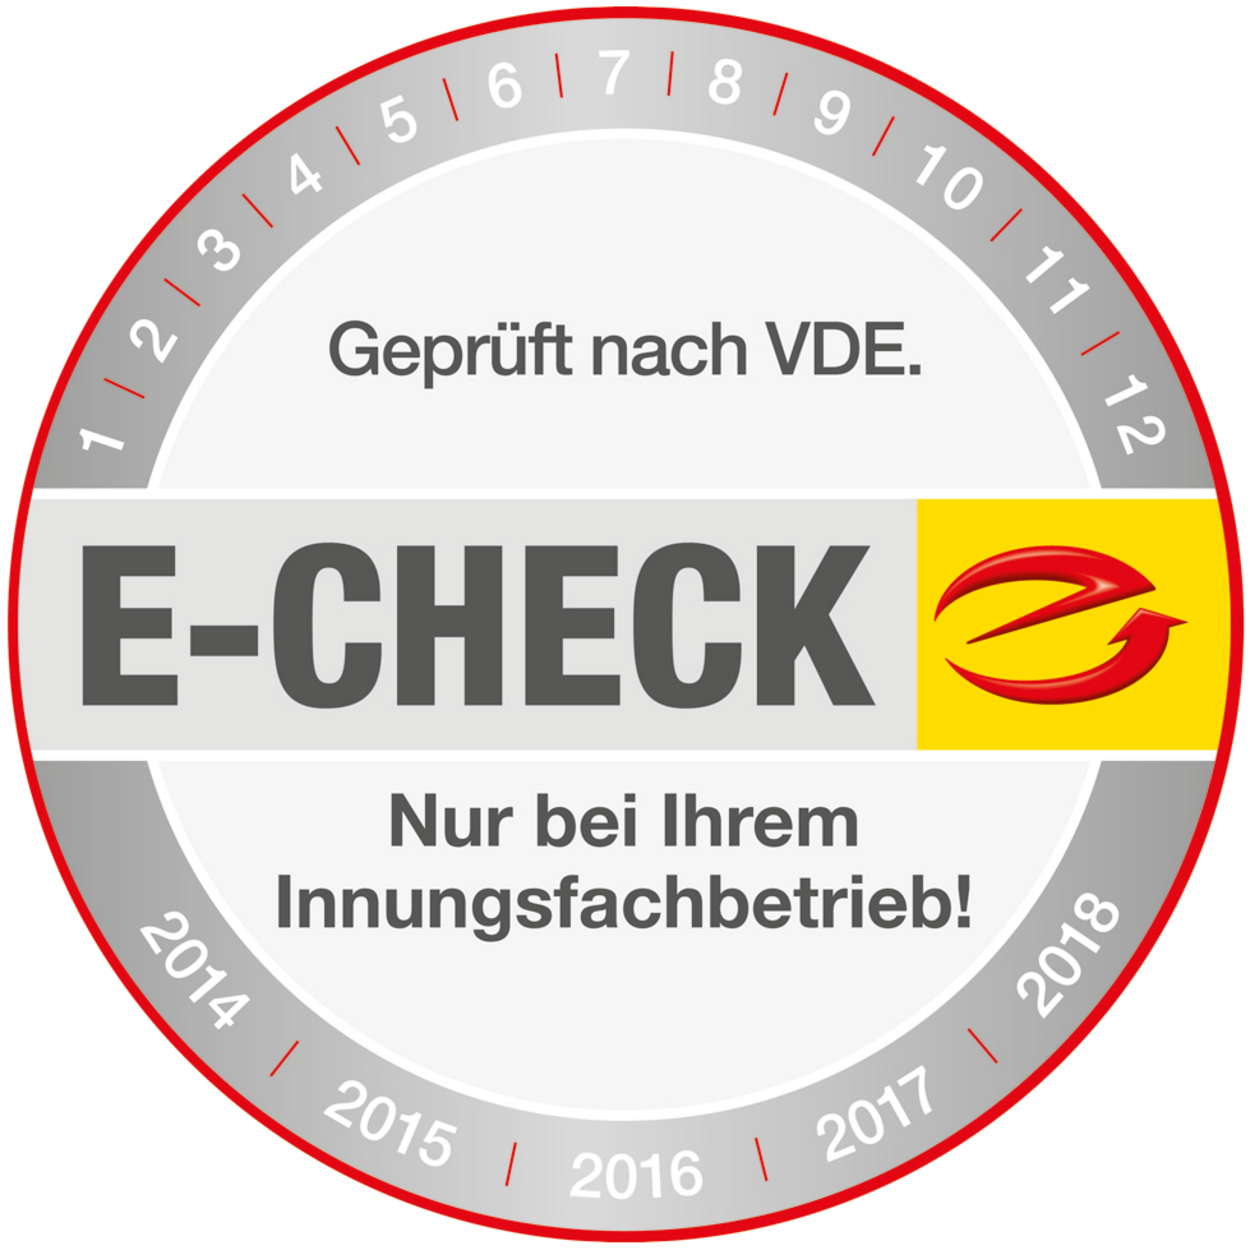 Der E-Check bei Elektro Mayer in Flintsbach